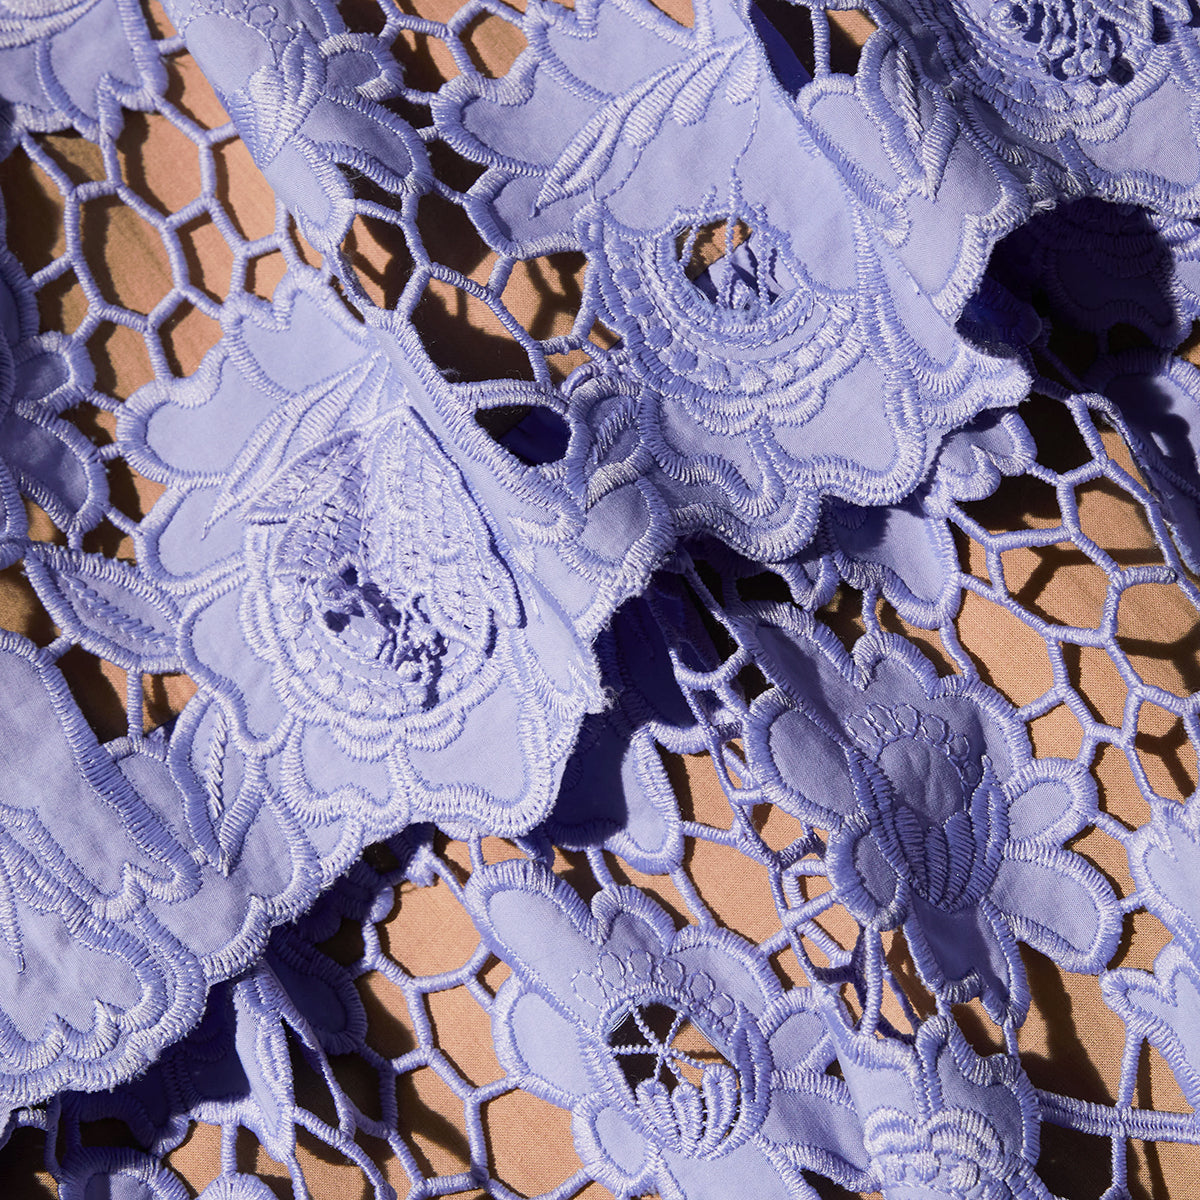 Lilac 3D Cotton Lace Midi Dress